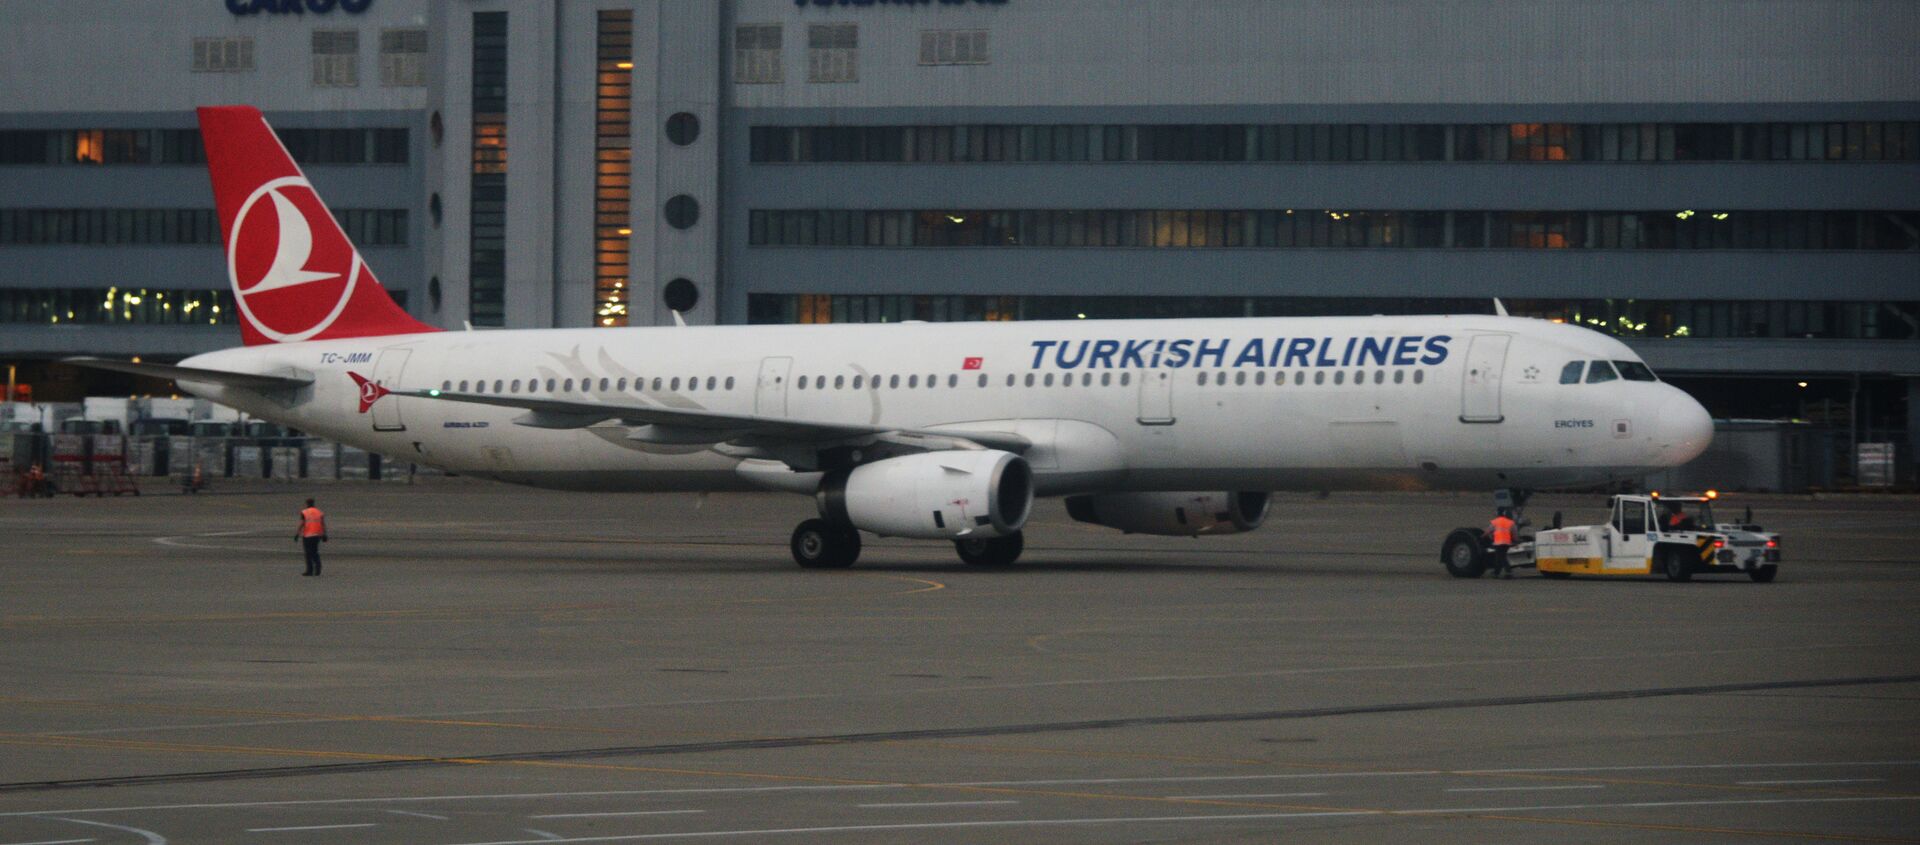 Самолет Airbus A321 авиакомпании Turkish Airlines в аэропорту Внуково в Москве. - Sputnik Грузия, 1920, 28.05.2021